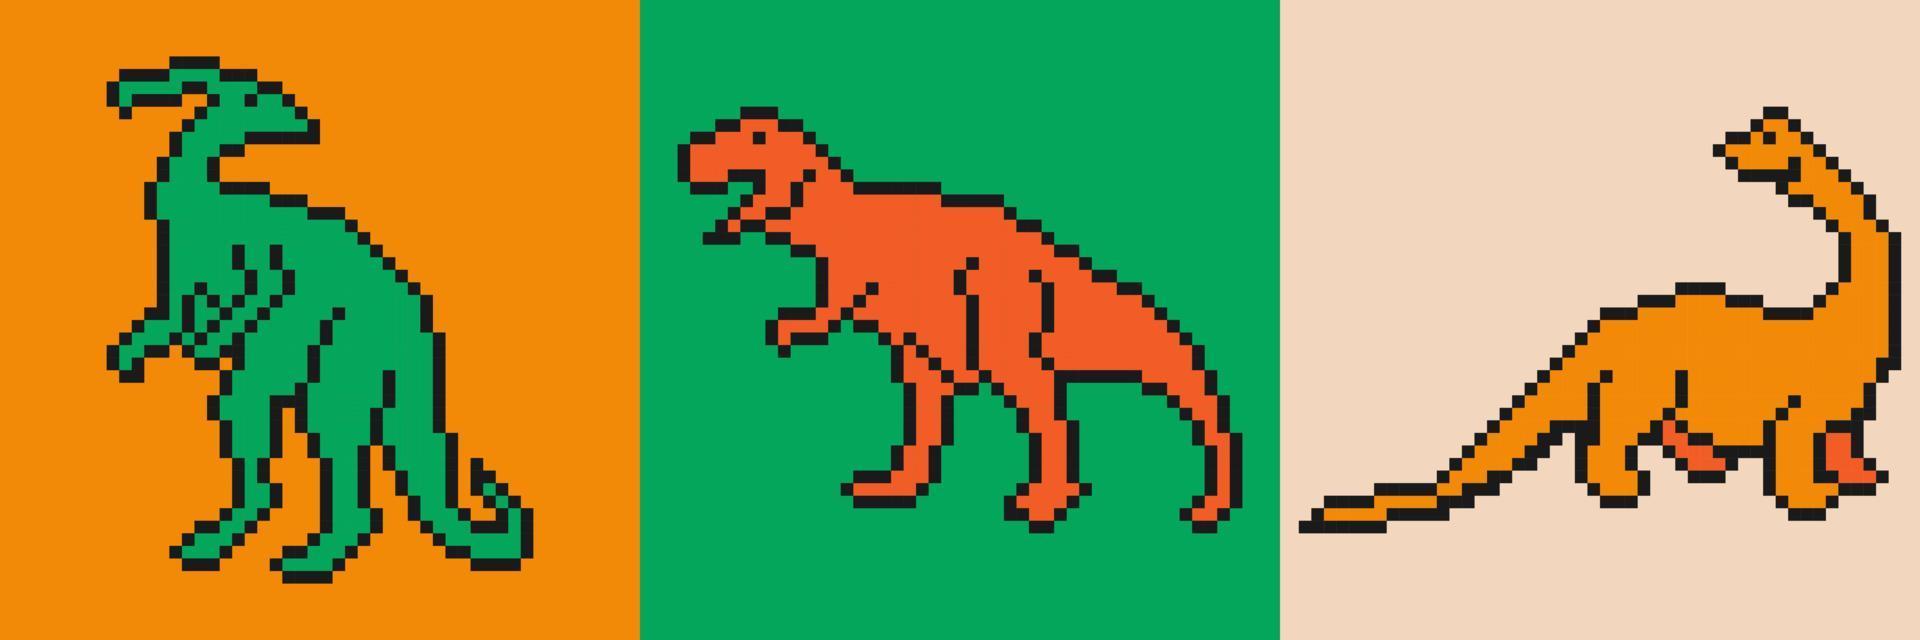 farbenfrohe Kunst mit Dinosauriern im Pixel-Art-Stil. Pixelkunst mit verschiedenen Dinosauriern auf hellem Hintergrund. Vektor-Pixel-Kunst-Illustration. vektor